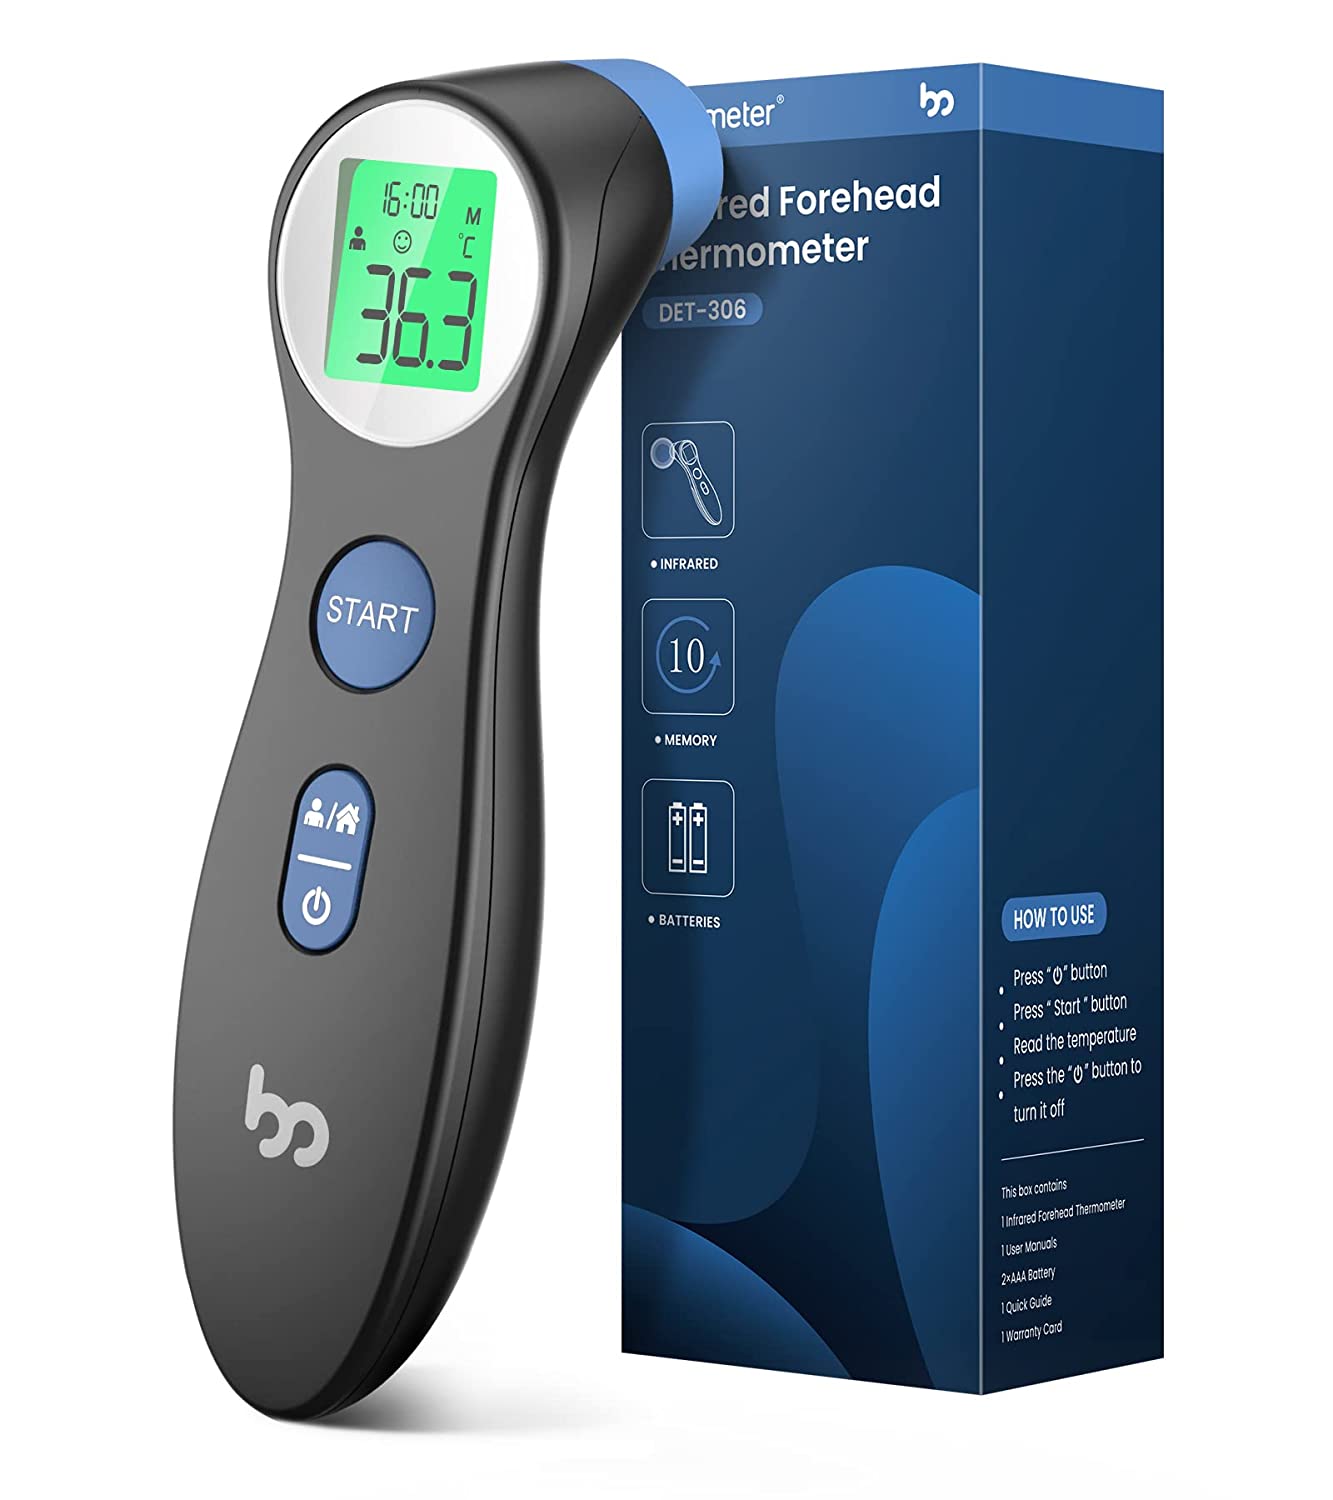 Gadget con termometro per monitoraggio febbre bambino